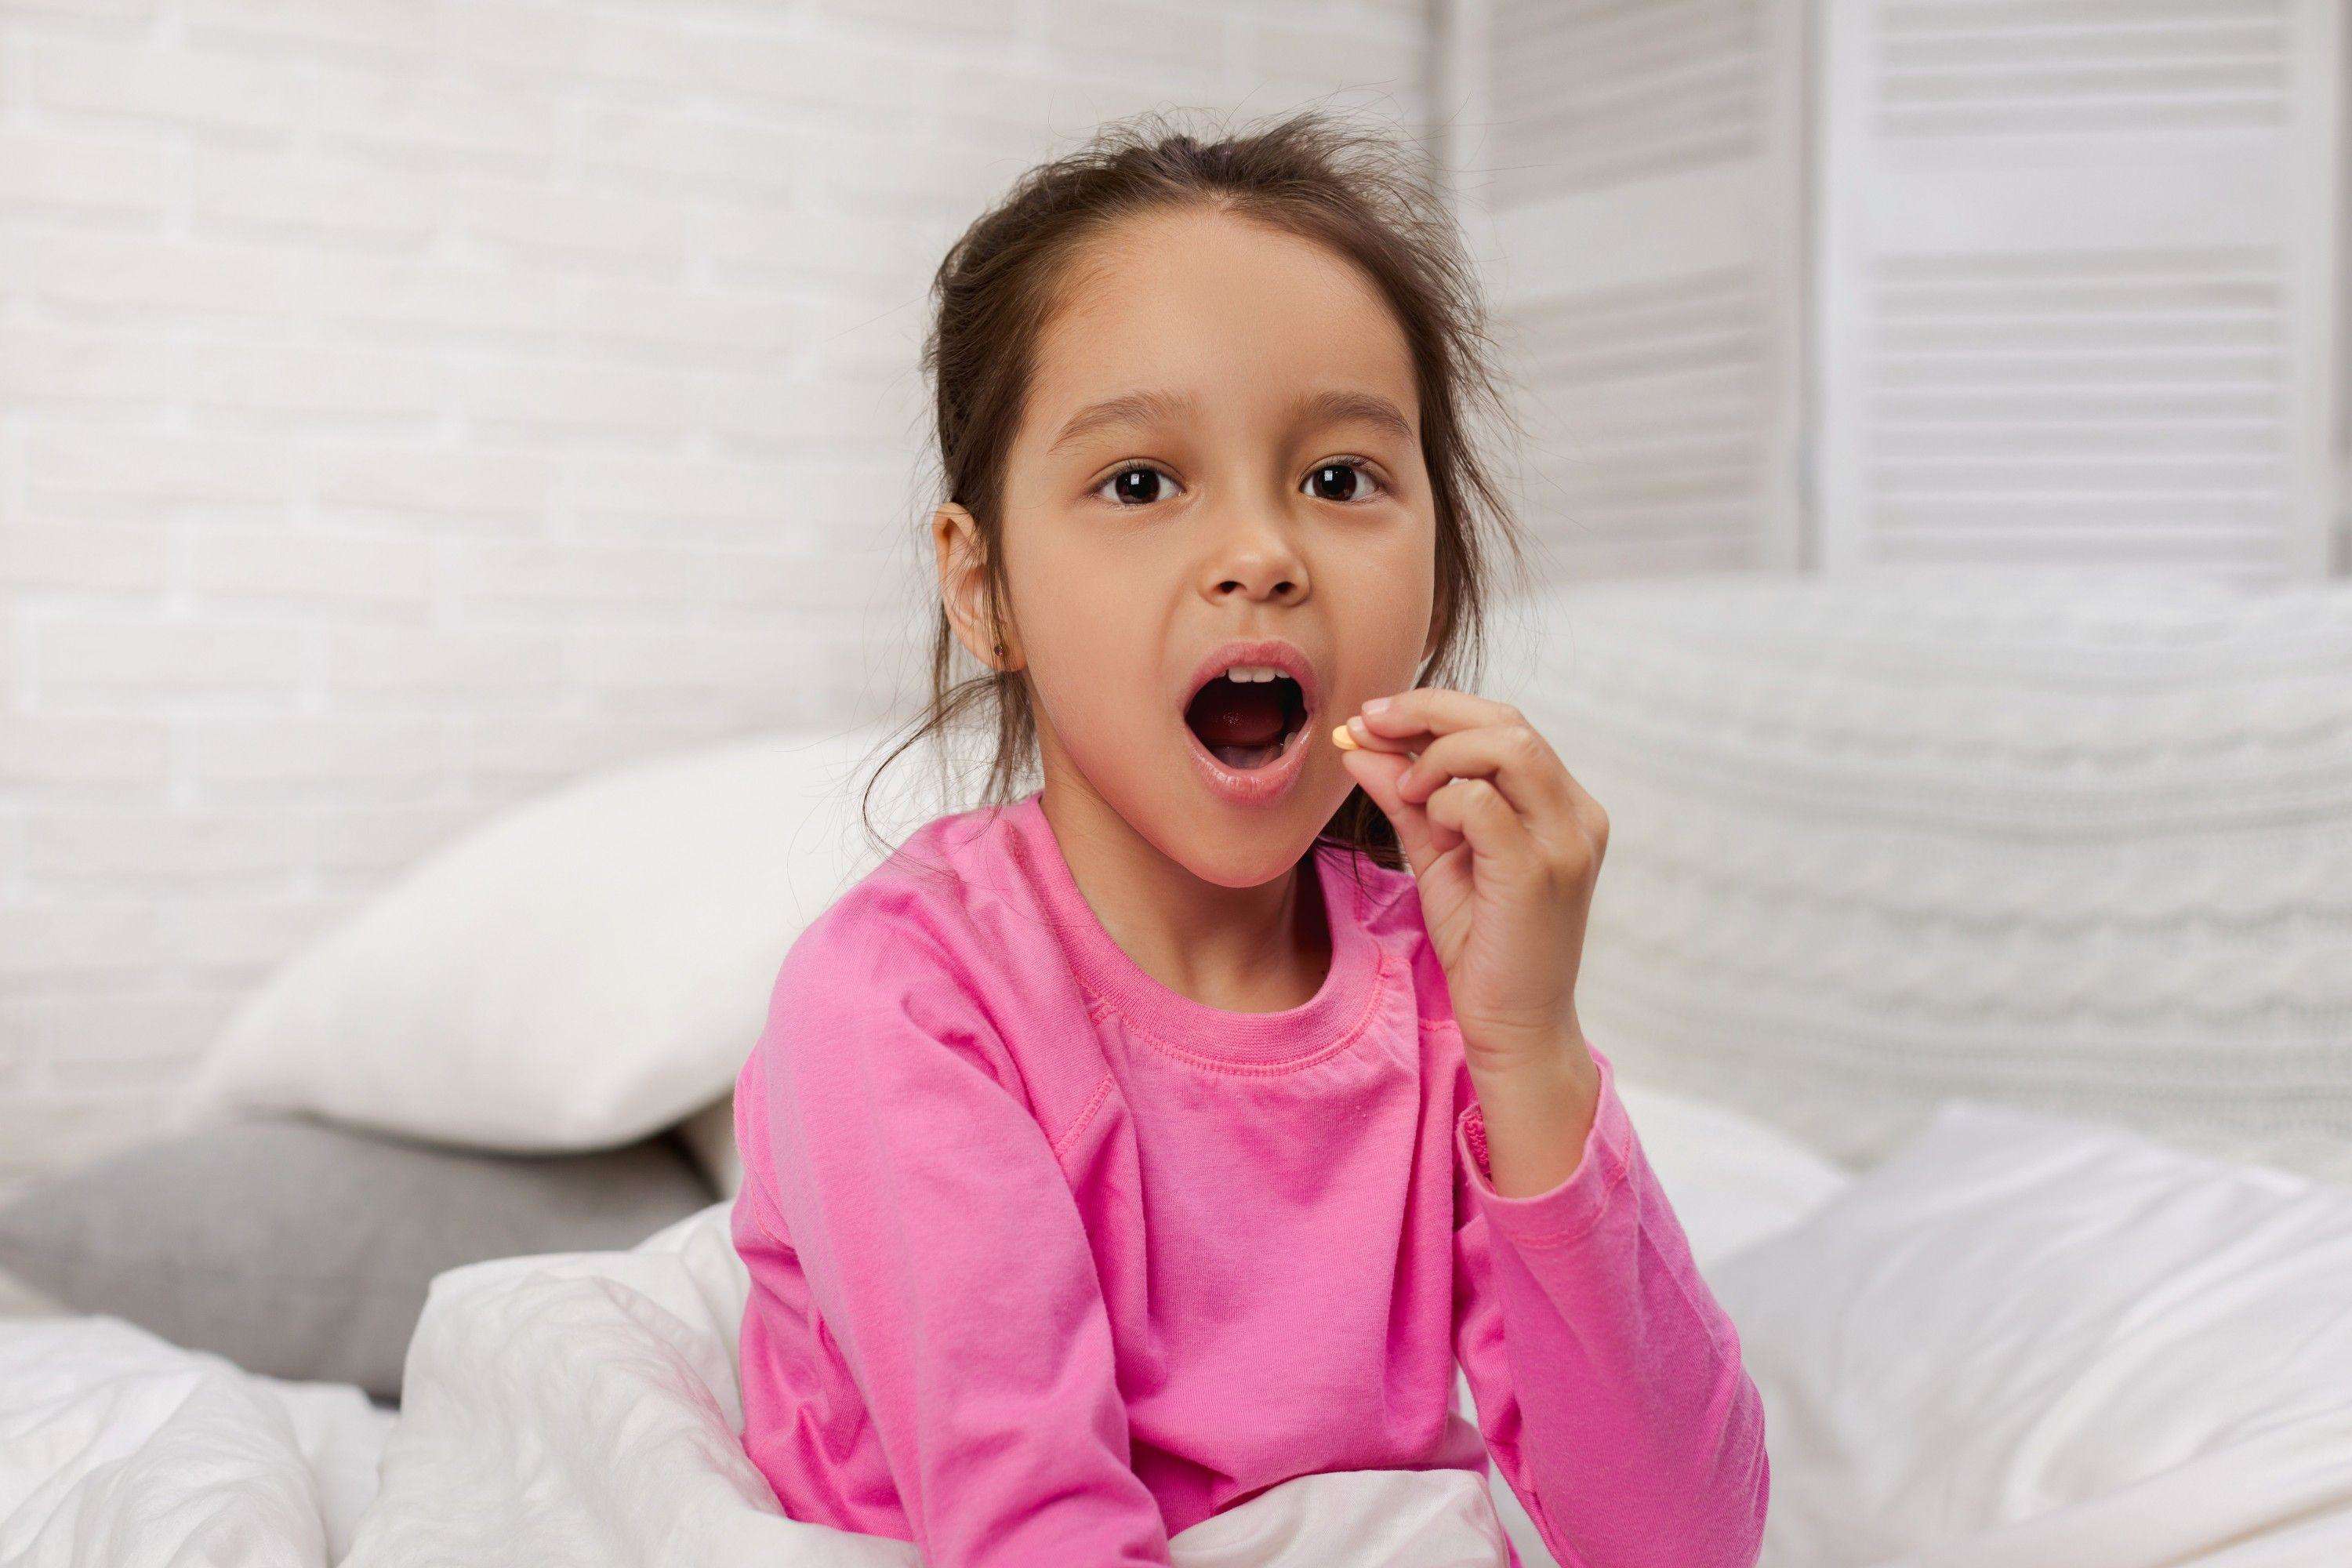 Study: यहां बताया गया है कि कैसे एंटीबायोटिक्स आपके बच्चे को नुकसान पहुंचा सकते हैं